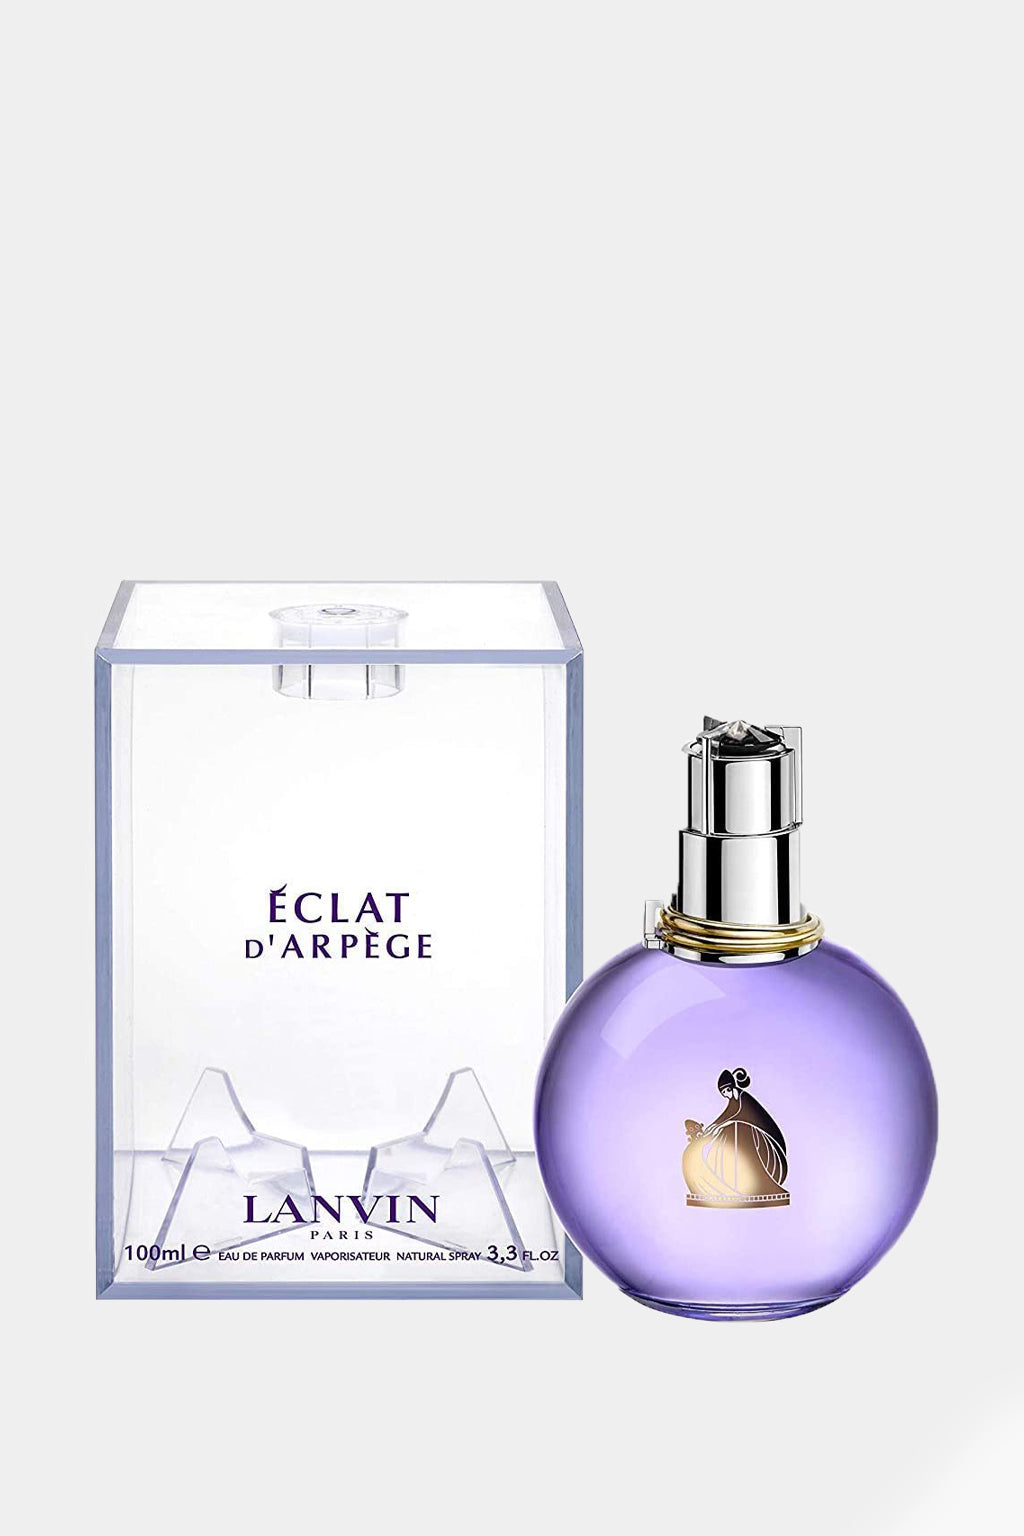 Lanvin - Eclat d'arpege Eau de Parfum